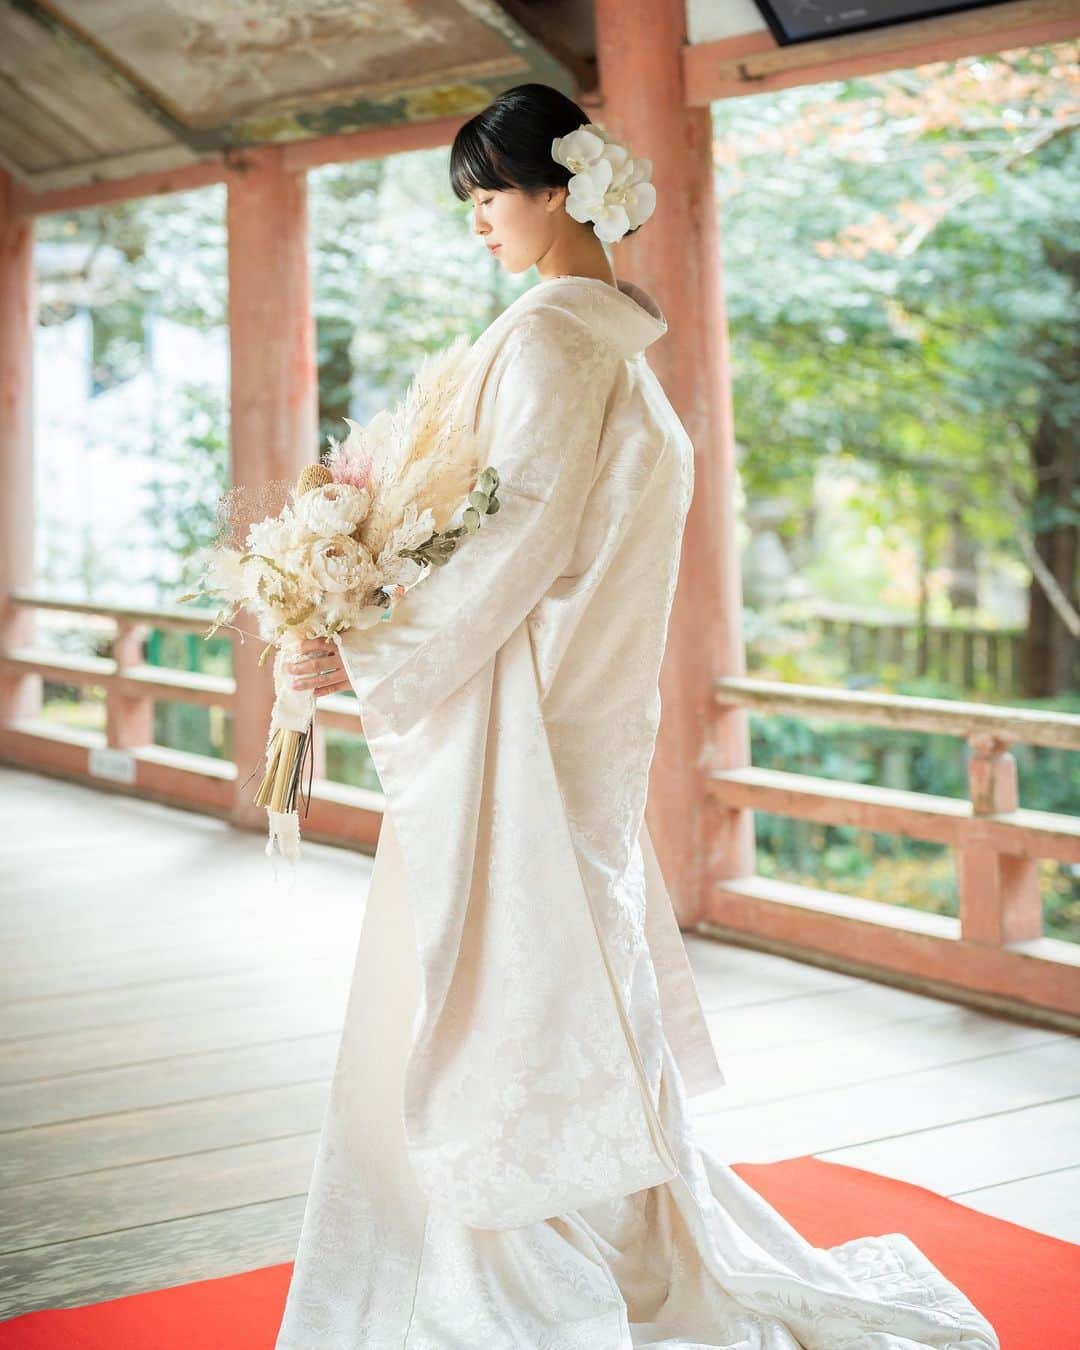 juno_jinjakonのインスタグラム：「. 美しい日本の花嫁姿  JUNO神社婚は、挙式前にもしっかりと撮影ができるようスケジュール組みをしております。  何年経っても色褪せない、ハレの日のお姿を残しましょう。  @juno_jinjakon   🕊8月31日まで！ -開催中の神社婚フェアのお知らせ- ⁡ ご来店予約で今なら "セルフフォトウェディング"プレゼント‼︎ ⁡ ■期間 2023年8月31日(木)迄 ※ご予約が満席のお日にちもございます🙇‍♀️ ⁡ ■フェア特典 フェア期間中、JUNO神社婚相談会を ご予約いただいた全ての新郎新婦様へ、 Dressesが手掛けるセルフフォトをプレゼント！ ⁡ 詳しくはプロフィール画面のURLより ご確認くださいませ🍃 ⁡ ■ 開催店舗 JUNO天神本店 ⁡ ■参加特典：セルフフォトウェディング詳細 ・Dressesが厳選したウェディングドレス&タキシードを着用して撮影が可能！（私服でも可） ・簡単なヘアセット、アクセサリーはご準備してあるので手ぶらでもOK！ ・お渡しのデータはその場で5カットプレゼント！ ⁡ さらに、お二人の撮影したお写真をDresses公式Instagramに掲載させていただける方には 撮影の全データをプレゼントさせていただきます。 ⁡ ※JUNO天神本店にて JUNO神社婚ご相談会にご参加後、 後日Dressesブライダルカウンター博多店にて 撮影のご案内をさせていただきます。 ⁡ －－－－－－－－－－－－－－－－－－－－－－－ ⁡ △ご予約方法△ @juno_jinjakon ホーム画面のURL よりお待ちしております。 ⁡ －－－－－－－－－－－－－－－－－－－－－－－ ⁡ お電話でのお問合せ、ご予約は⇩ ☏ 092-262-1107 (定休日:火曜日・水曜日) ⁡ ⁡ #神社挙式#白無垢#色打掛 #プレ花嫁 #家族婚#少人数結婚式 #福岡花嫁#神社婚 #和装ブーケ#枝ブーケ #和装スタイリング#洋髪 #太宰府天満宮#住吉神社#護国神社 #警固神社#香椎宮#宗像大社#竈門神社 #櫛田神社#宮地嶽神社」